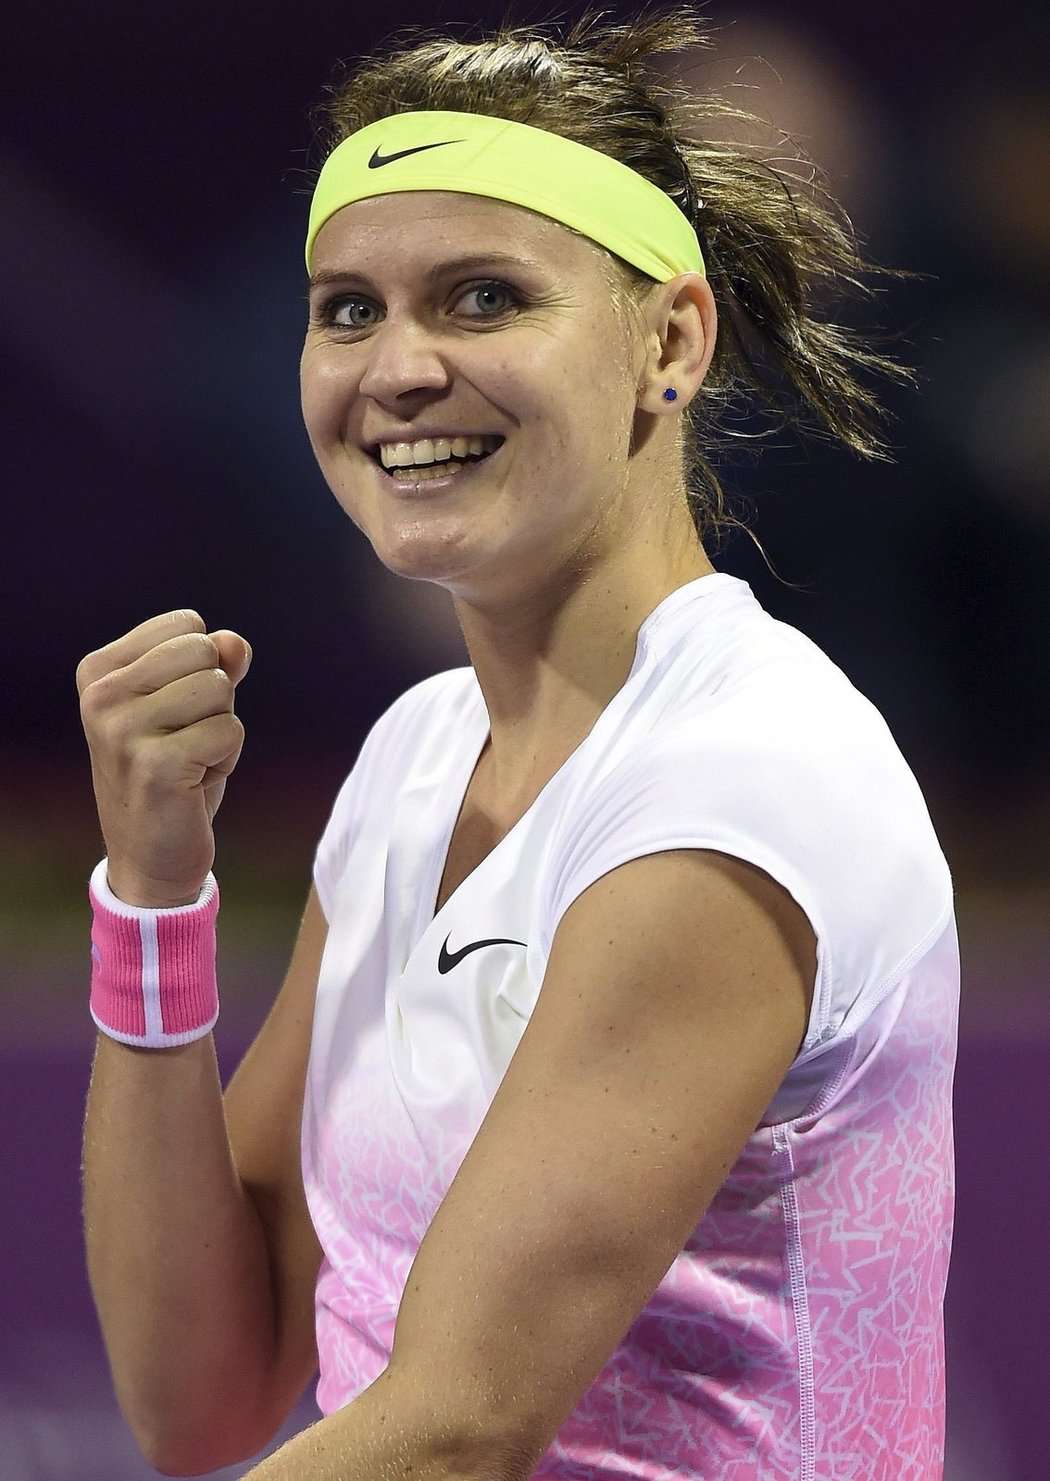 Vítězný úsměv Lucie Šafářové, která postoupila do finále turnaje v Dauhá